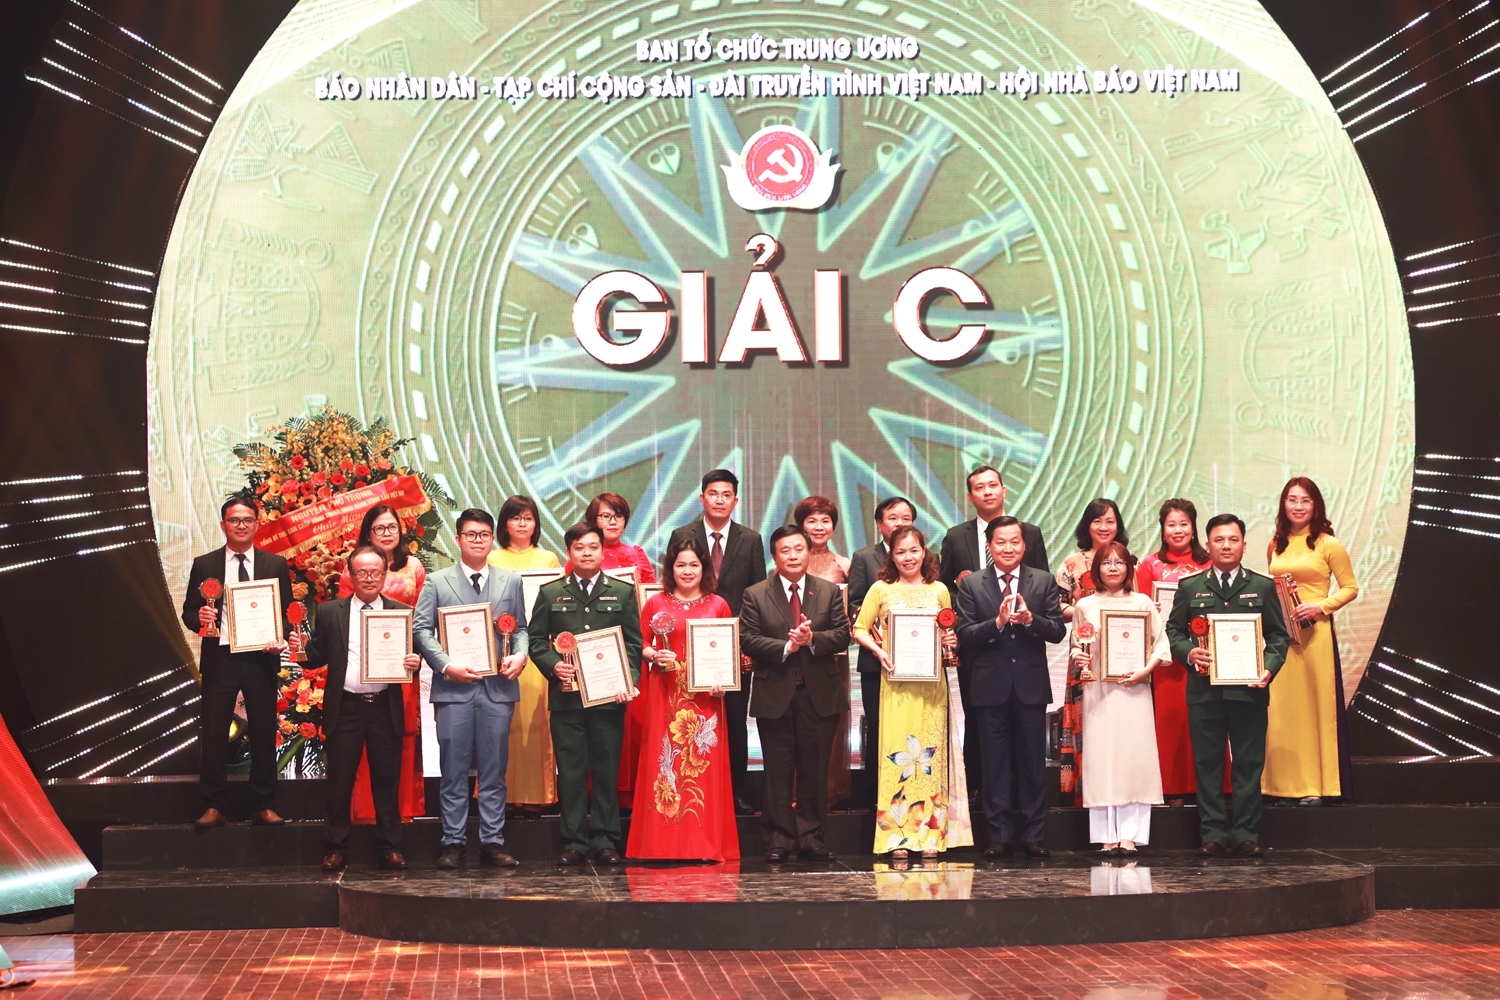 Giám đốc Học viện Chính trị Quốc gia Hồ Chí Minh Nguyễn Xuân Thắng và Phó Thủ tướng Lê Minh Khái trao Giải C cho các tác giả, nhóm tác giả có tác phẩm đoạt giải C